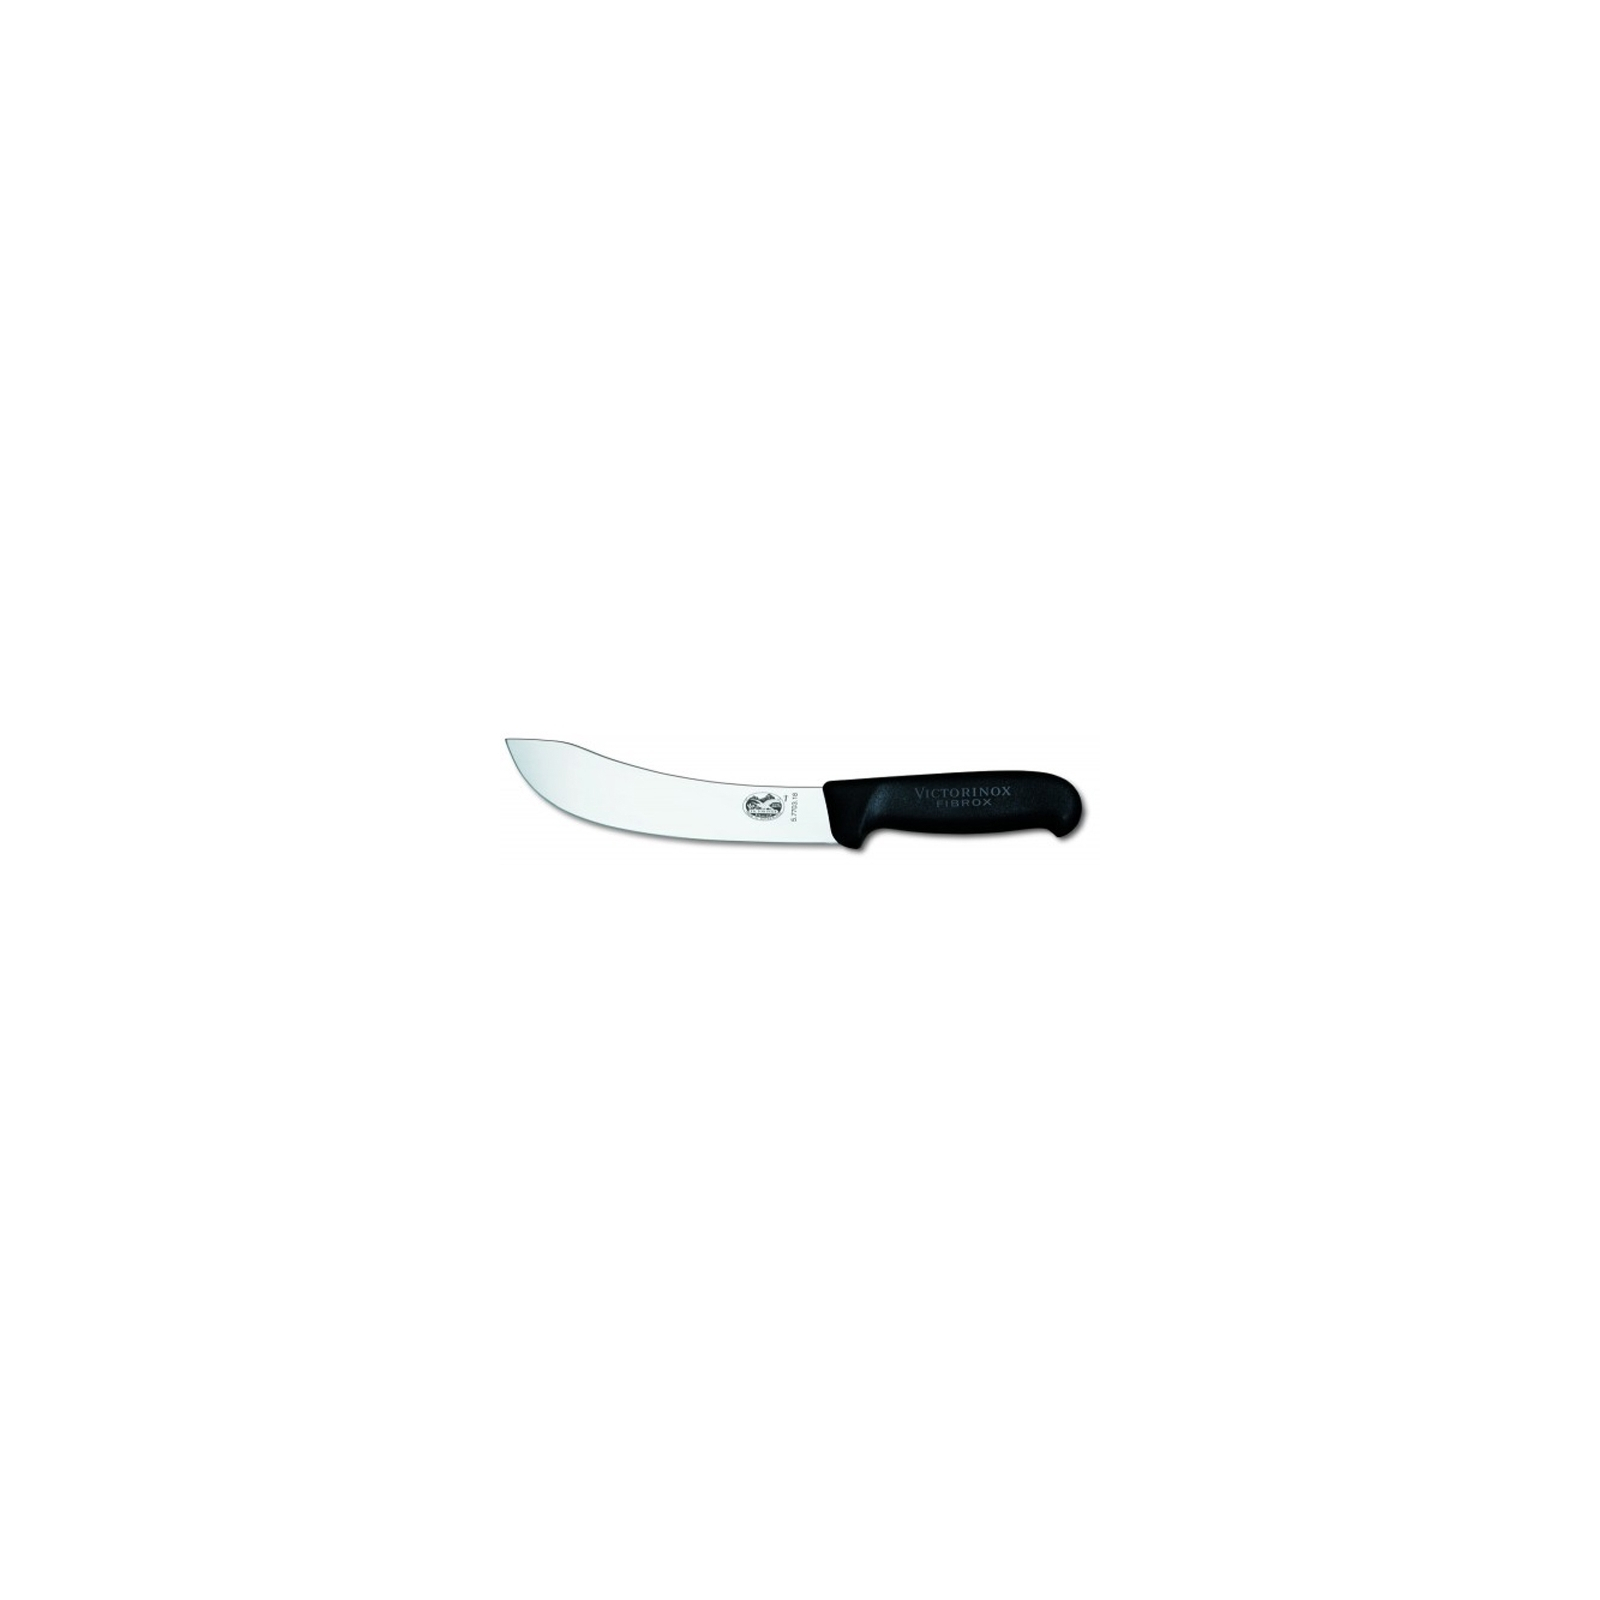 Кухонный нож Victorinox Fibrox разделочный 18 см, черный (5.7703.18)